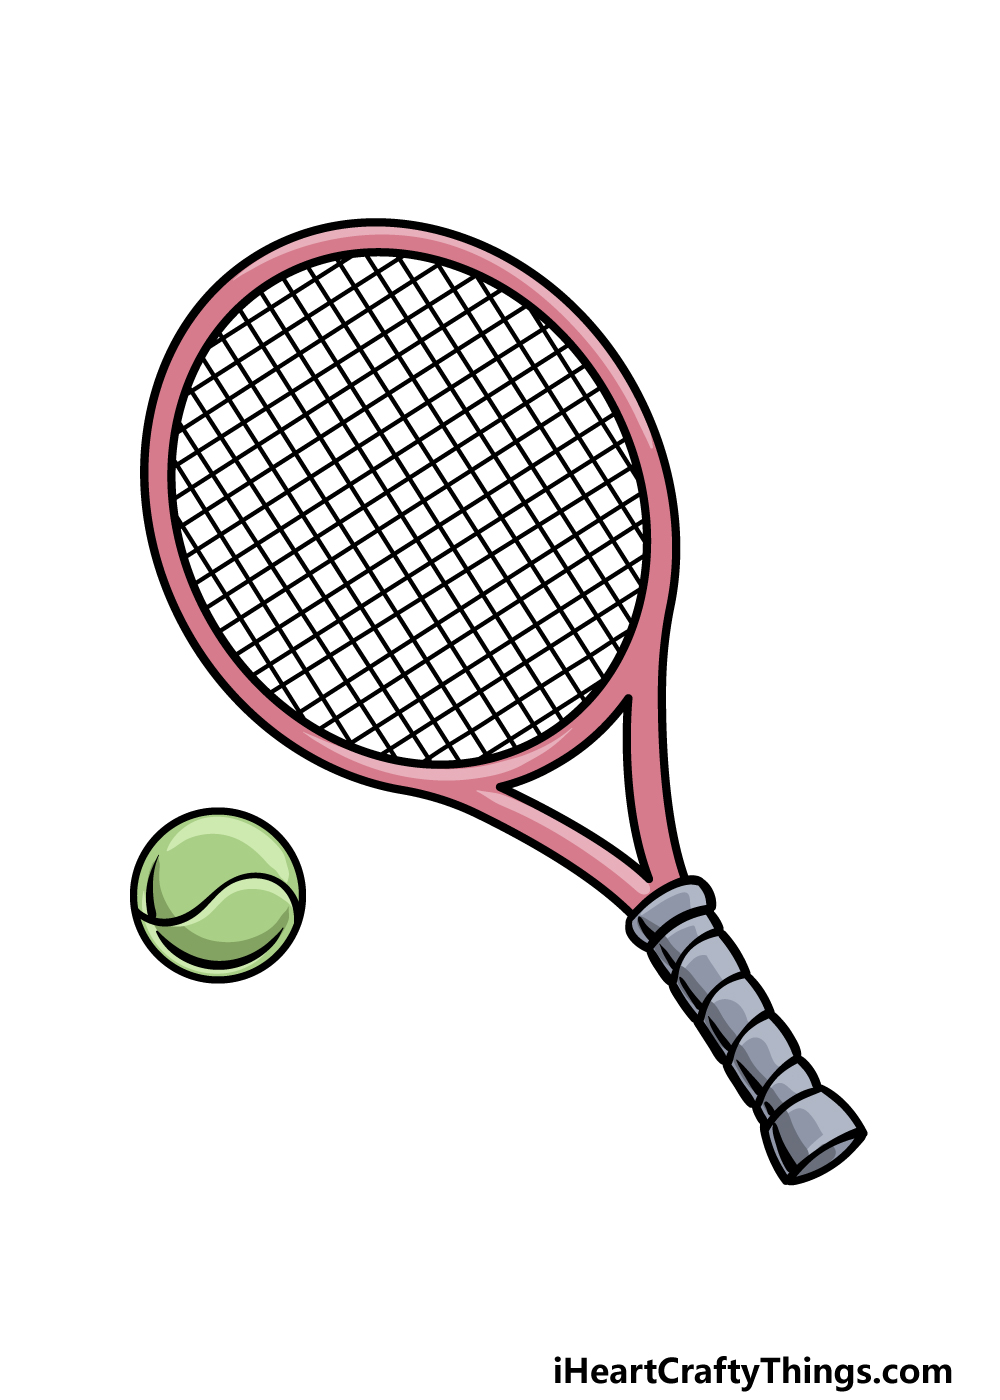 Tennis рисунок для детей